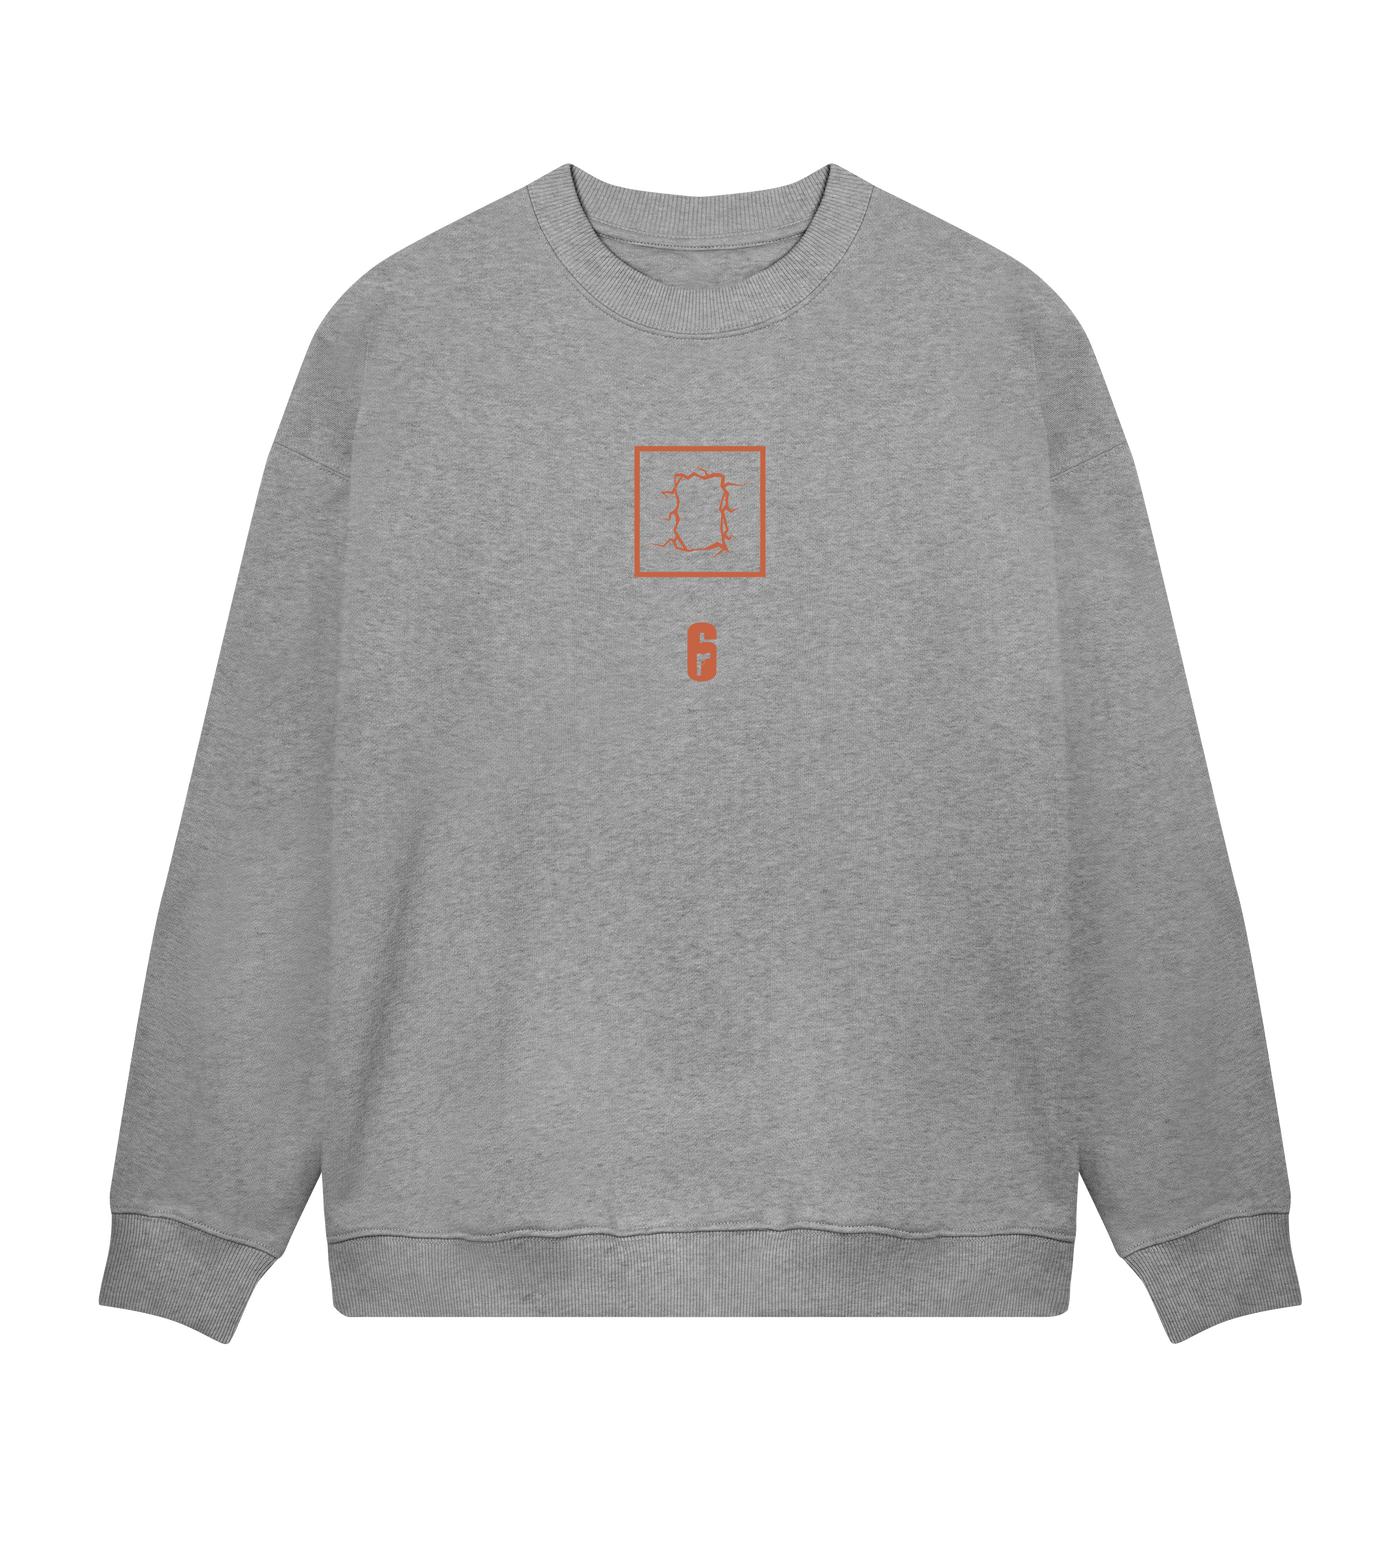 6 SIEGE - Thermite G Sweatshirt